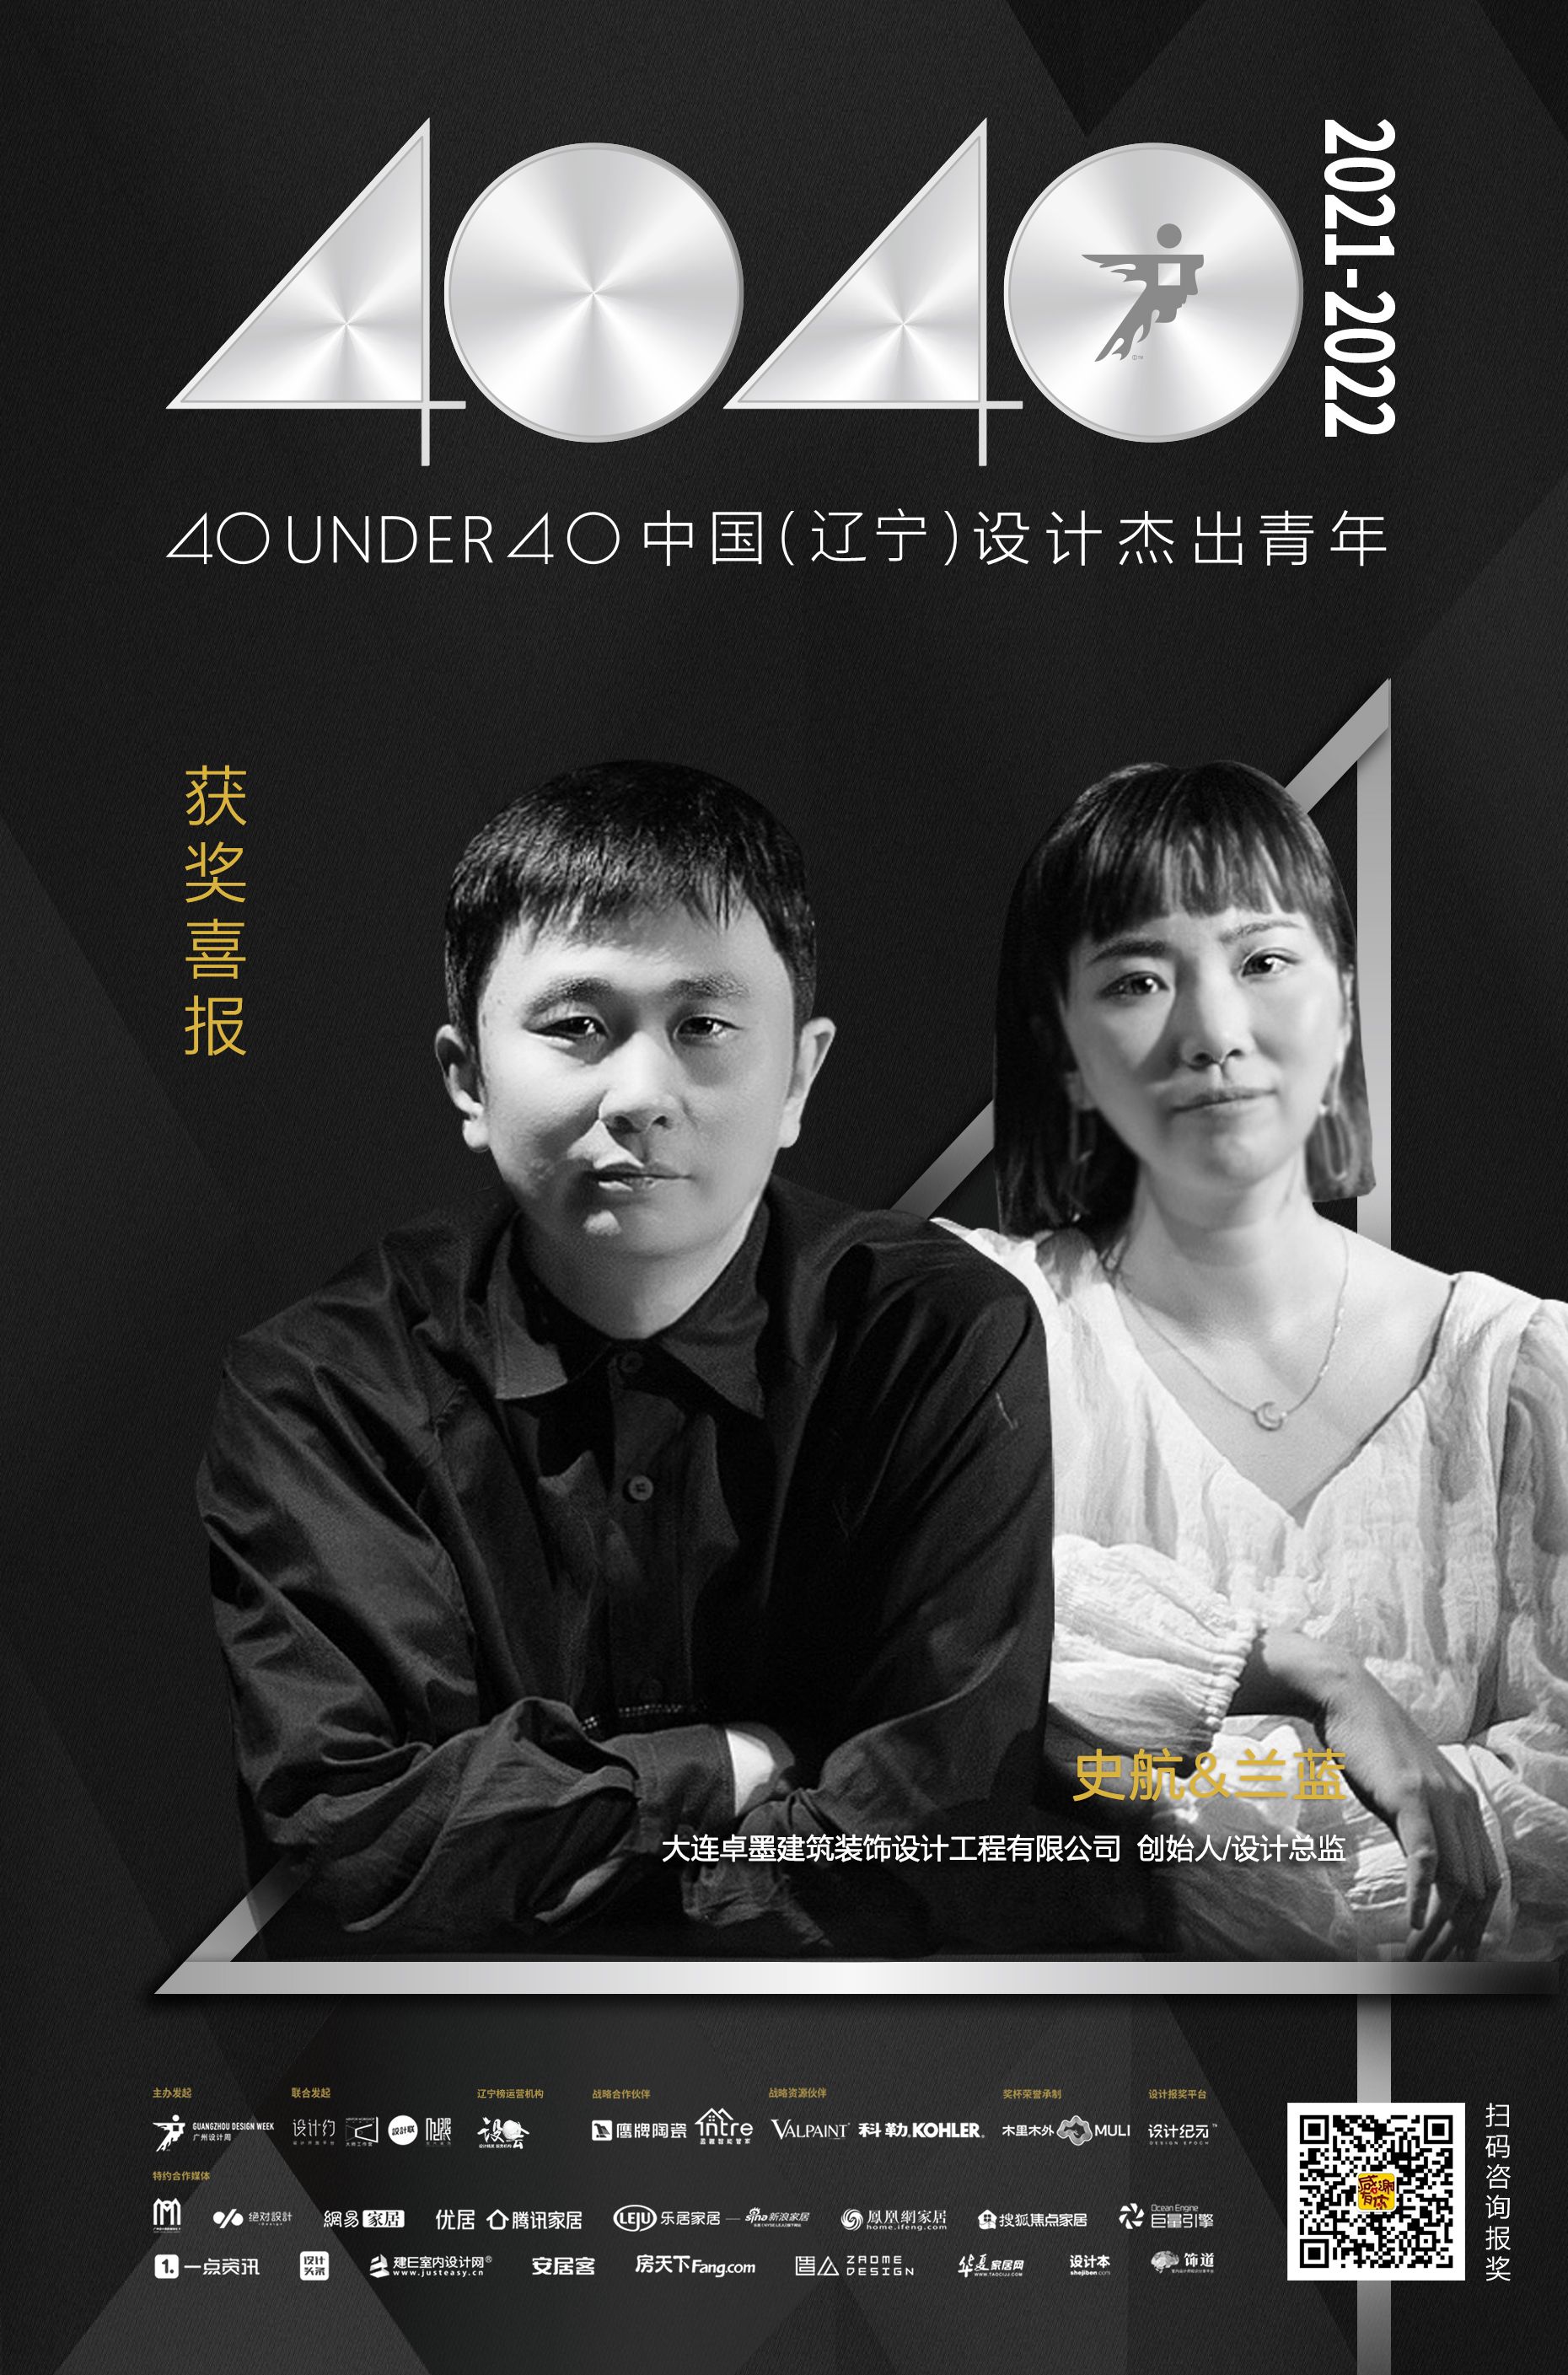 设计师史航&兰蓝荣耀入选40 UNDER 40辽宁设计杰出青年「Talk设计」